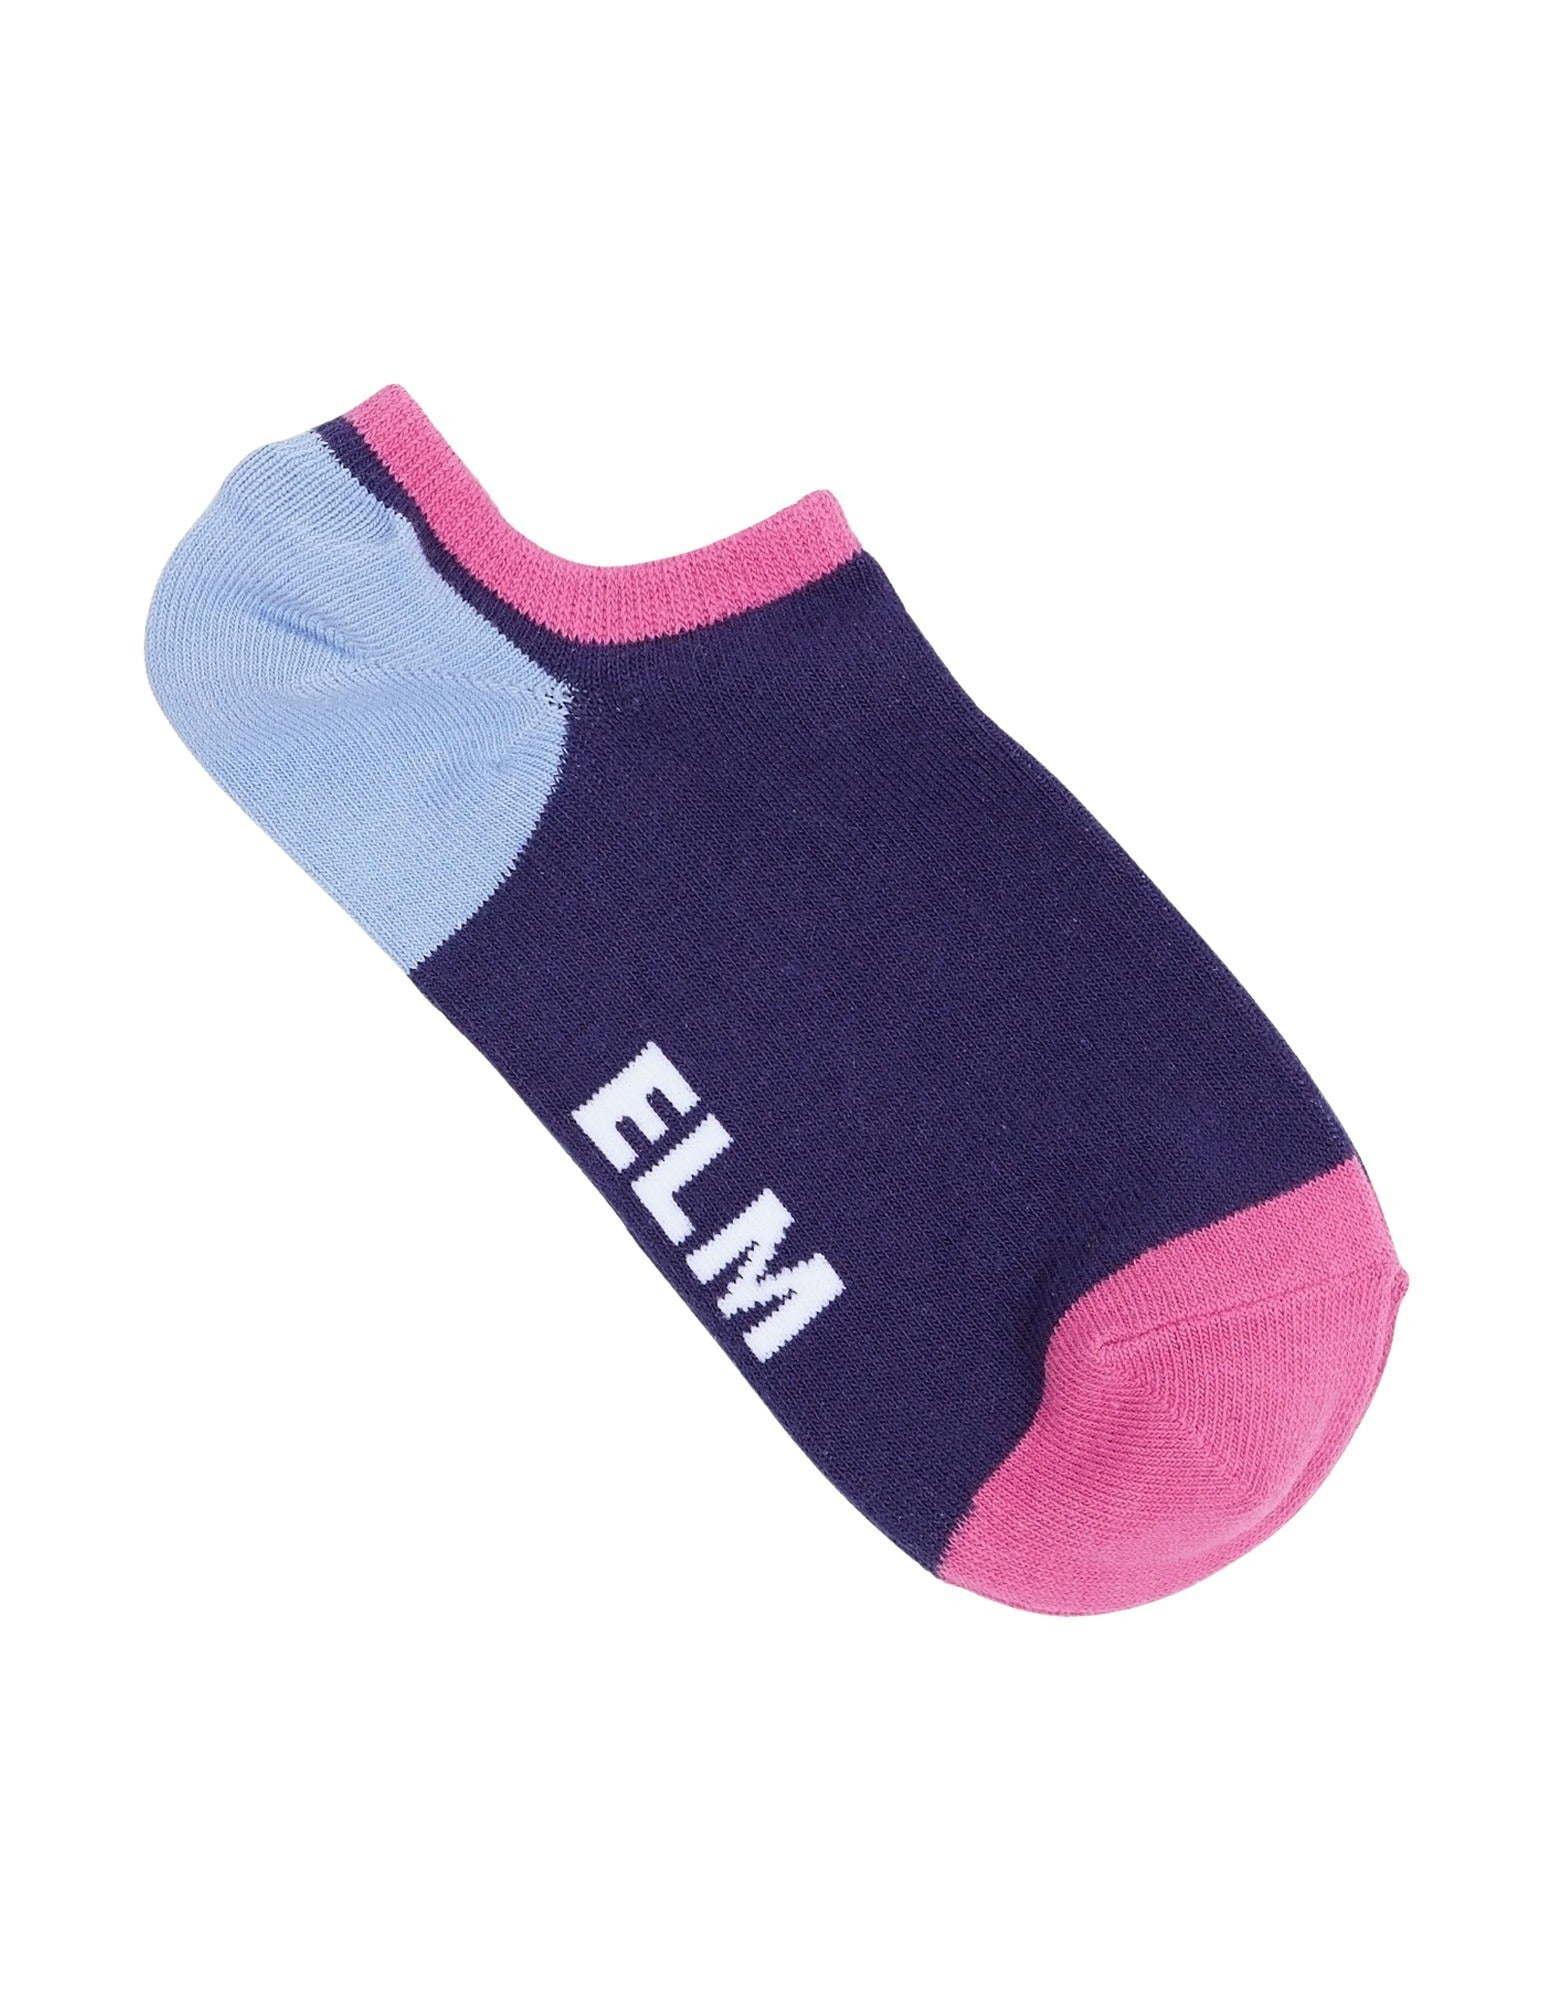 Elm - No Show Sock 2 PK - Orbit Green/Blue/Pink